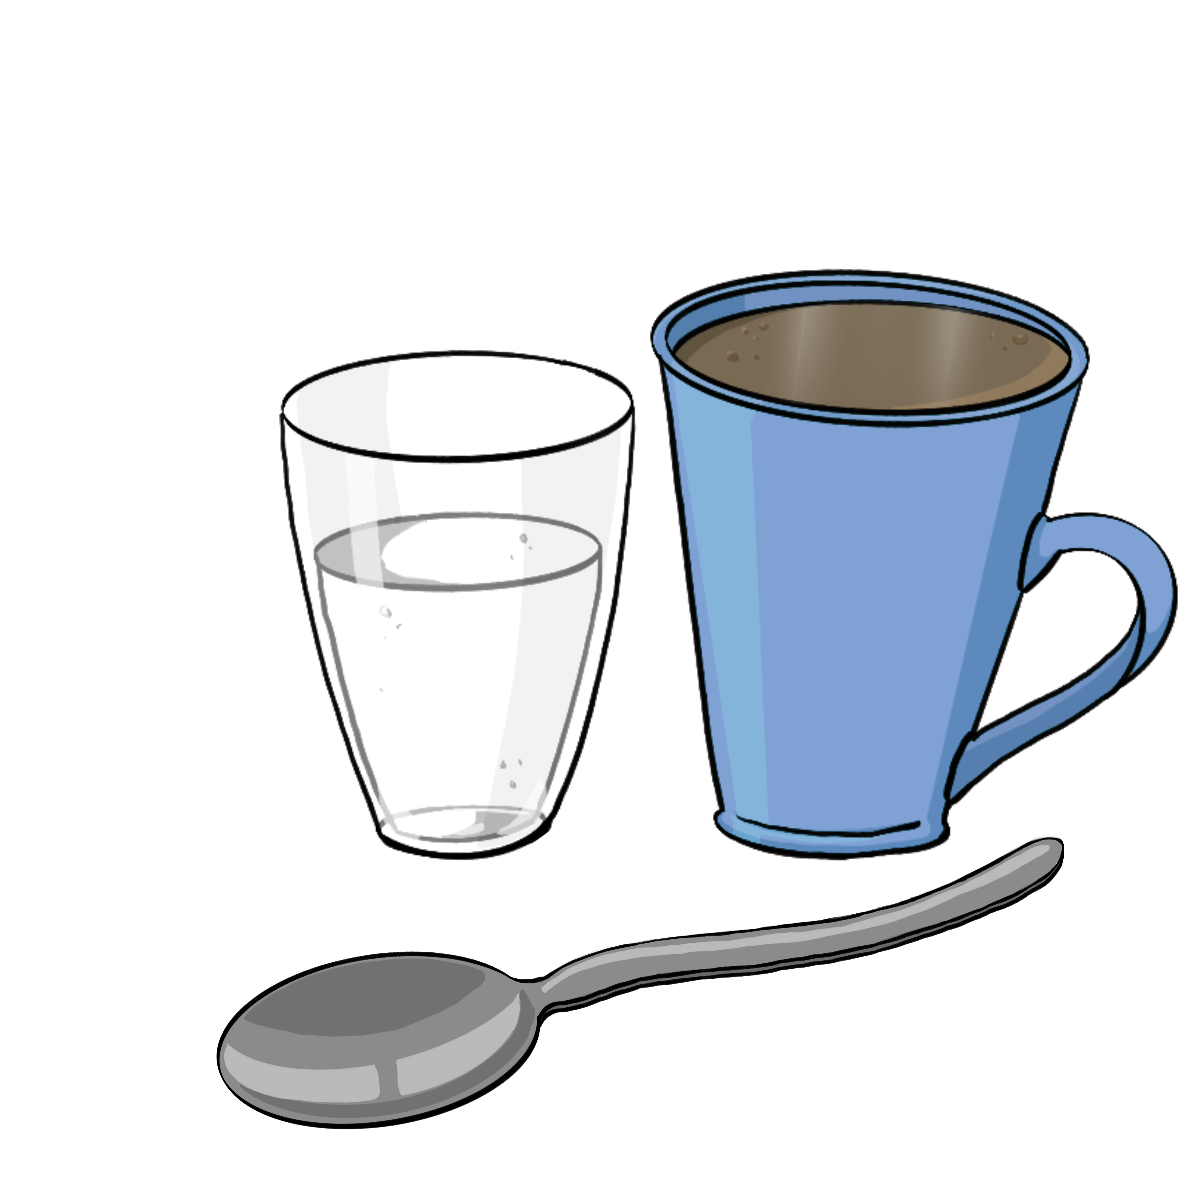 Ein Glas Wasser, eine Tasse mit dunklem Kaffee und ein Löffel.